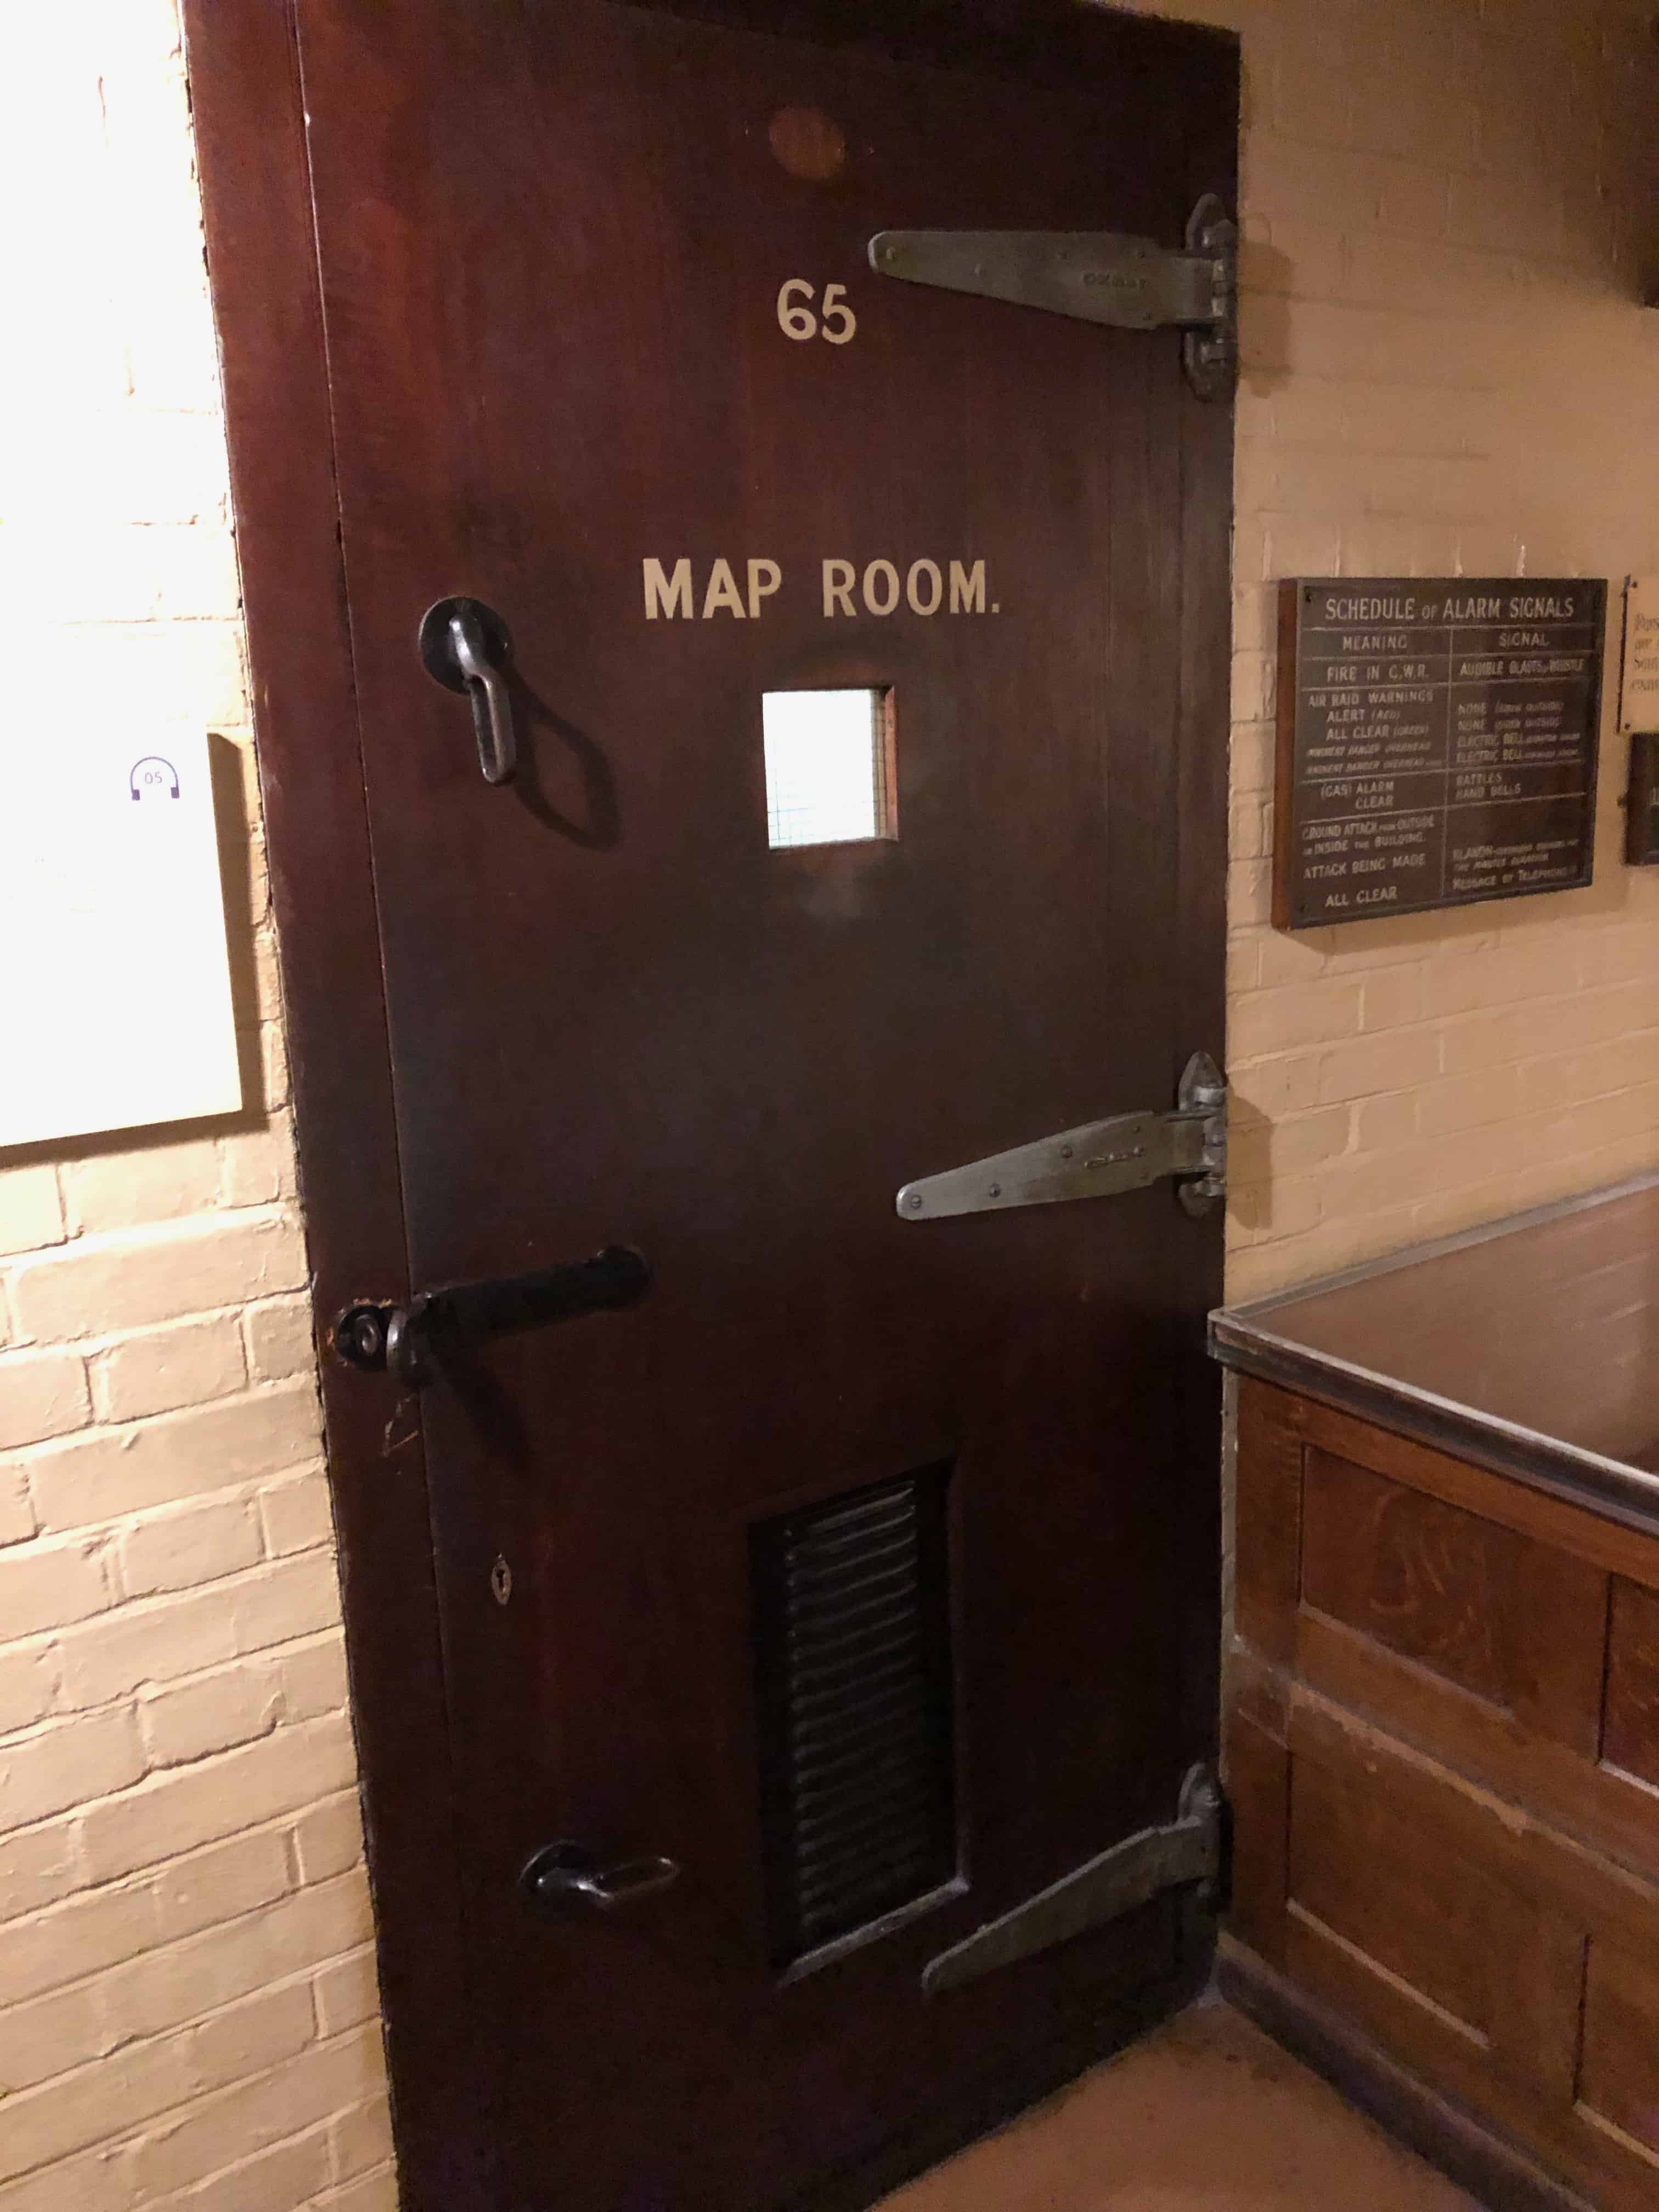 Door to the Map Room